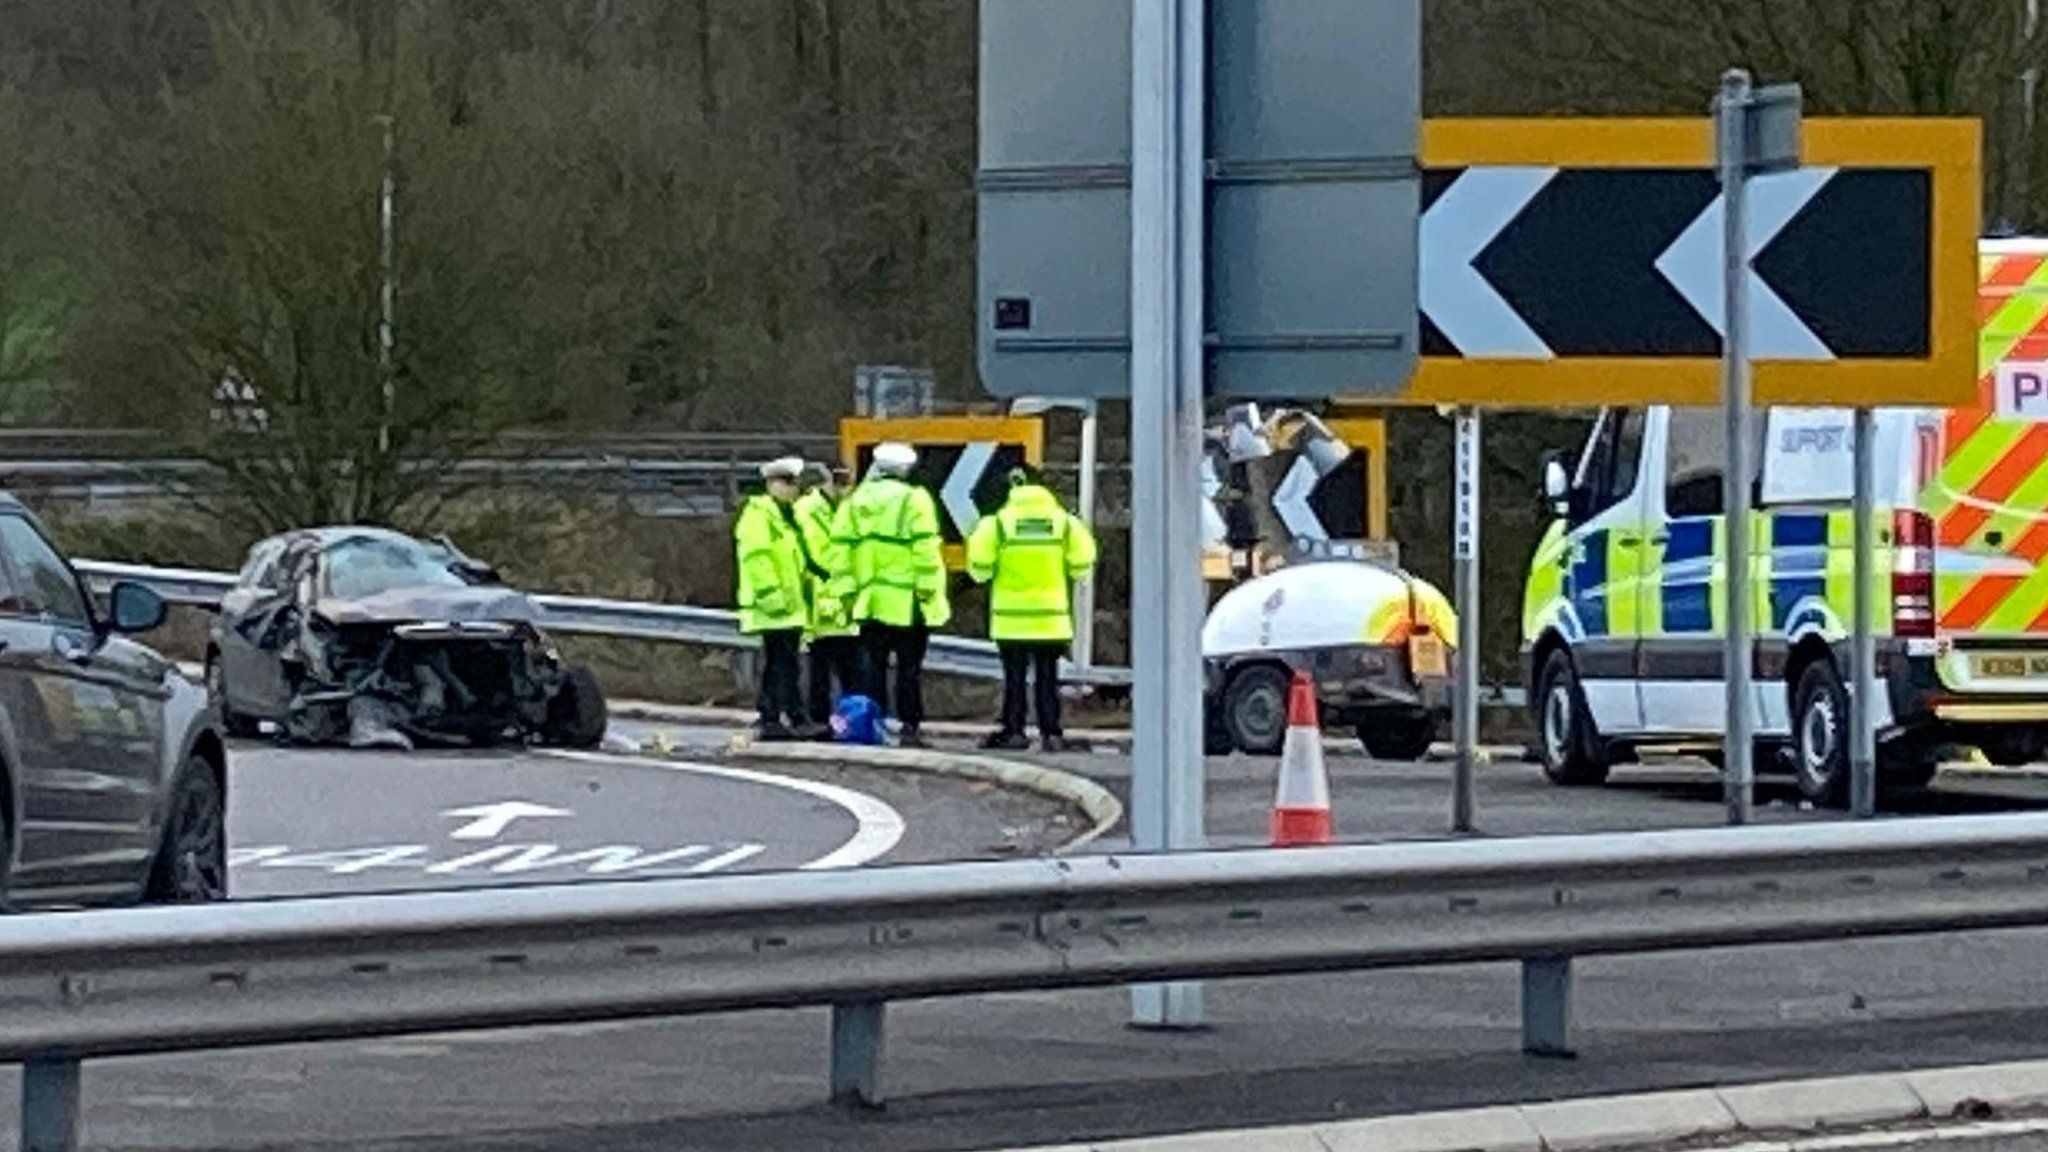 Scene of the crash